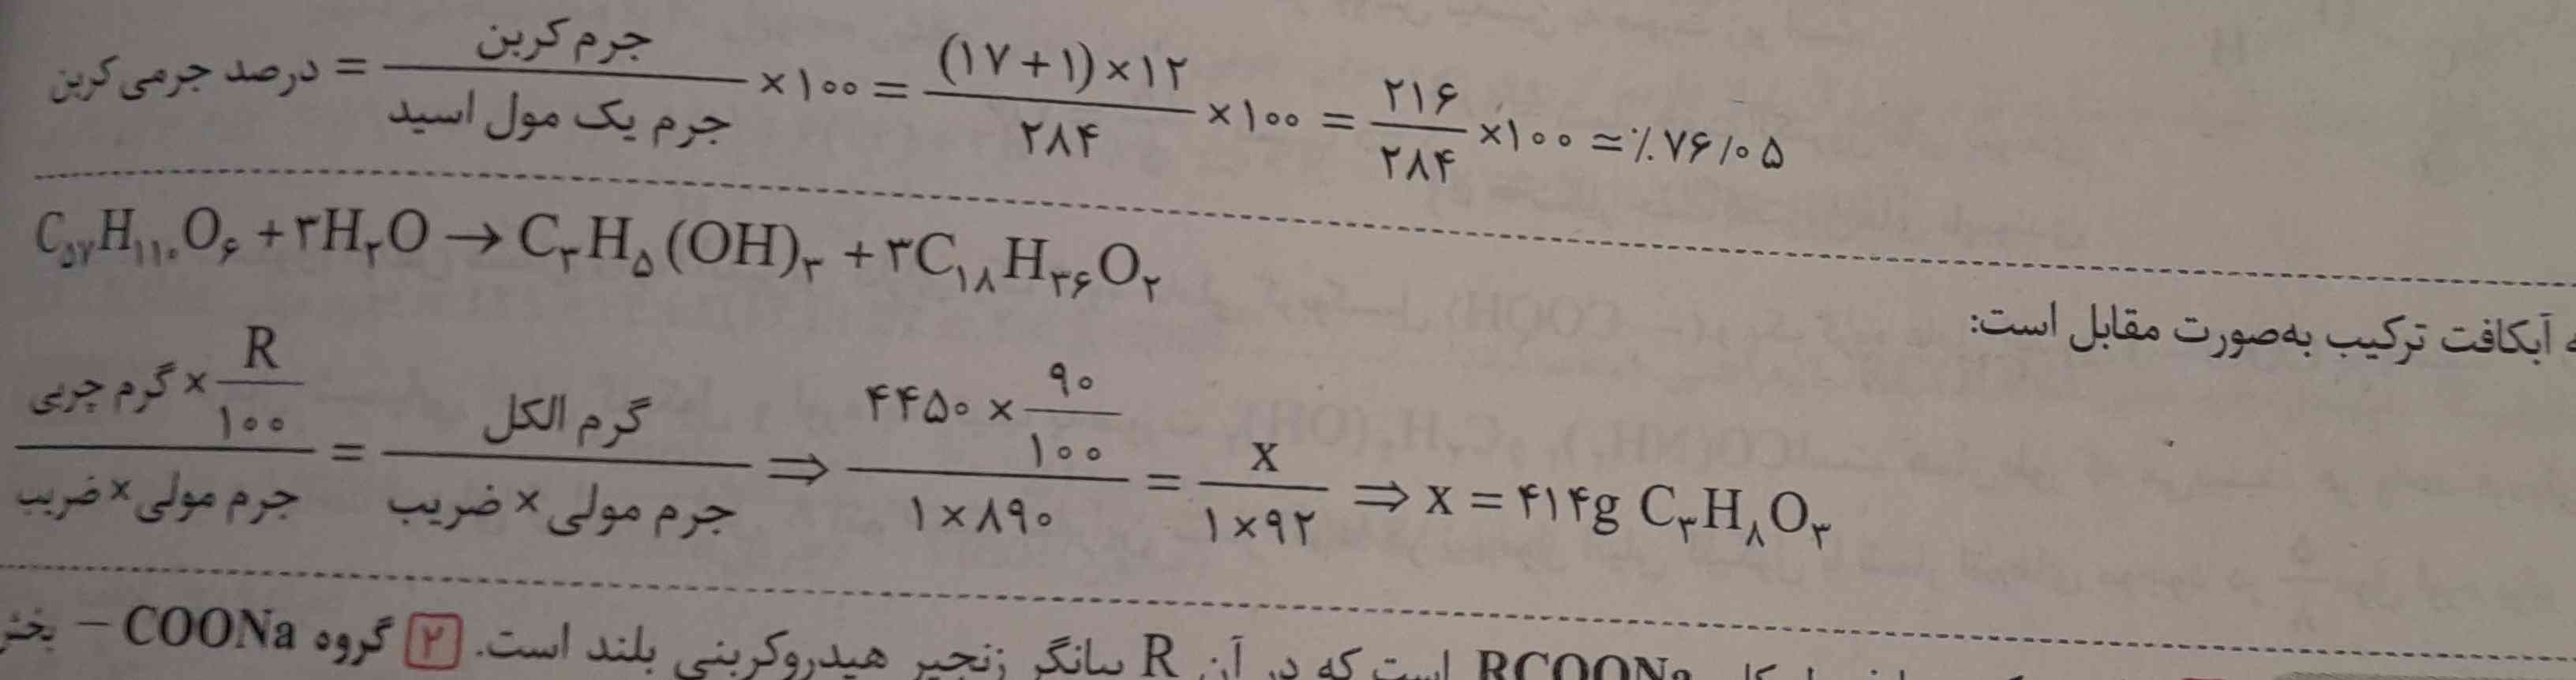 سلام
چجوری بفهمیم توی معادله ابکافت فرآورده چی هست